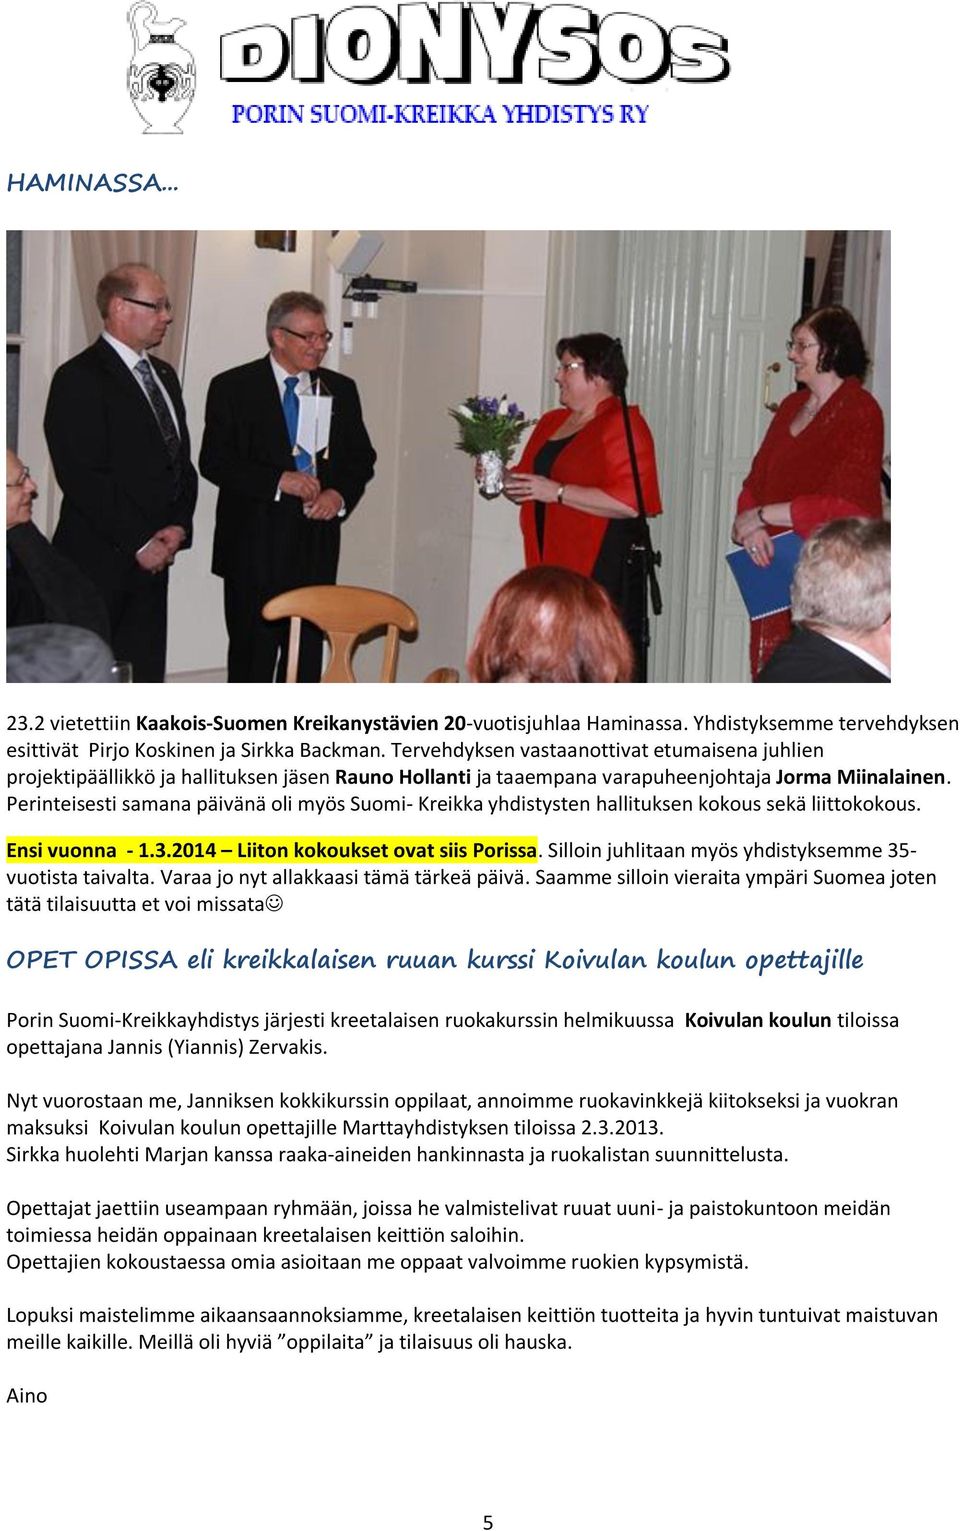 Perinteisesti samana päivänä oli myös Suomi- Kreikka yhdistysten hallituksen kokous sekä liittokokous. Ensi vuonna - 1.3.2014 Liiton kokoukset ovat siis Porissa.